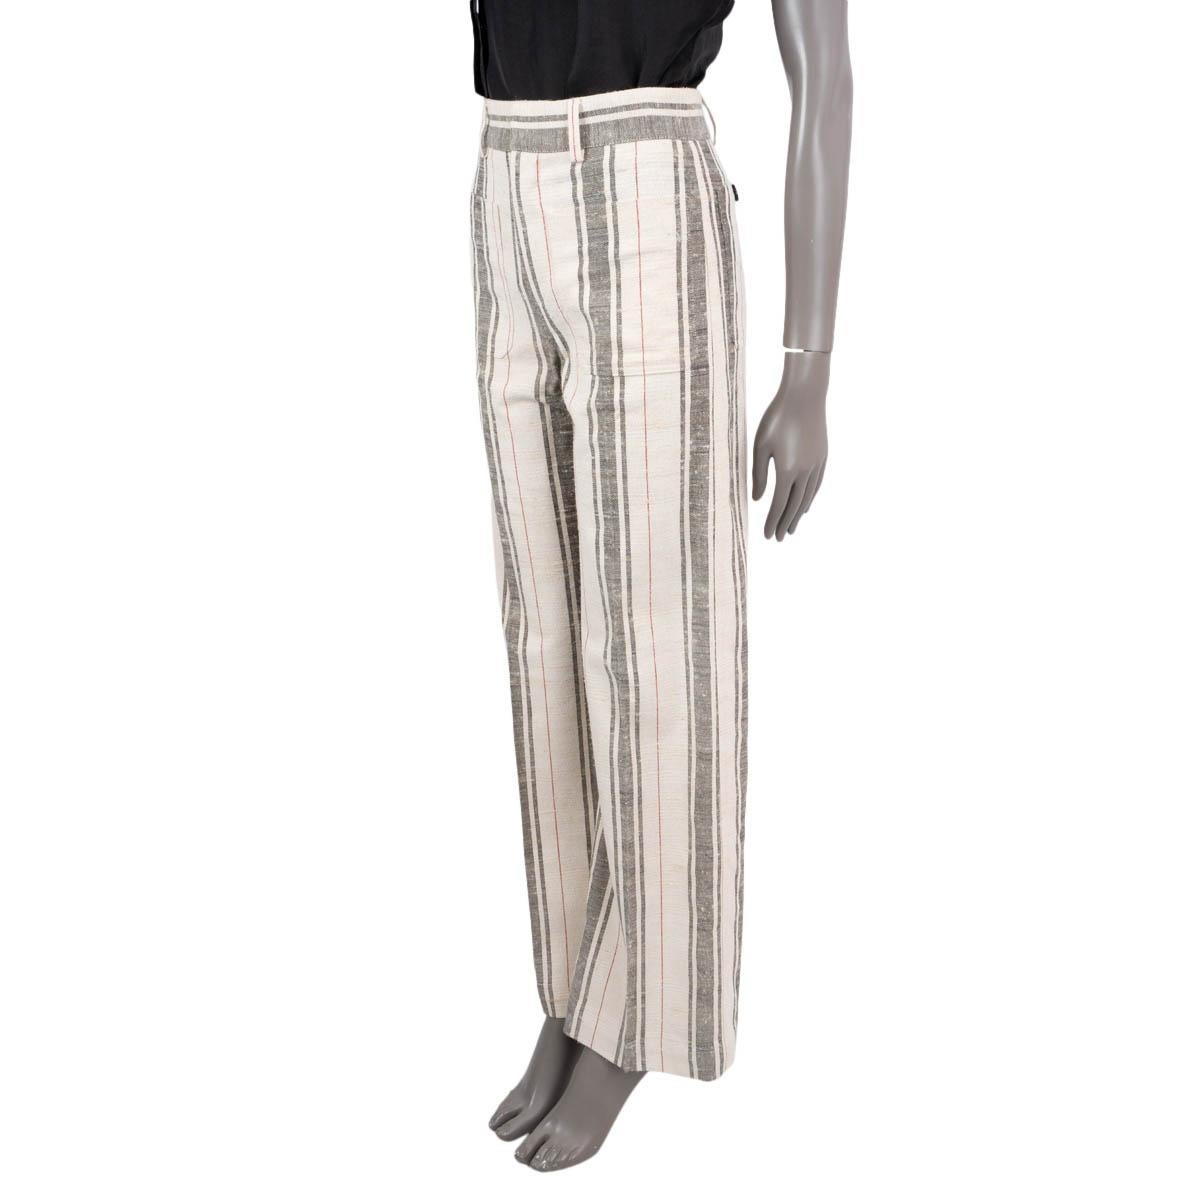 Pantalon taille haute rayé écru, noir et rouge en coton (51%) et soie (49%) 100% authentique Christian Dior. Ce modèle présente une jambe évasée, deux poches plaquées à l'avant, des poches plaquées boutonnées à l'arrière et des passants de ceinture.